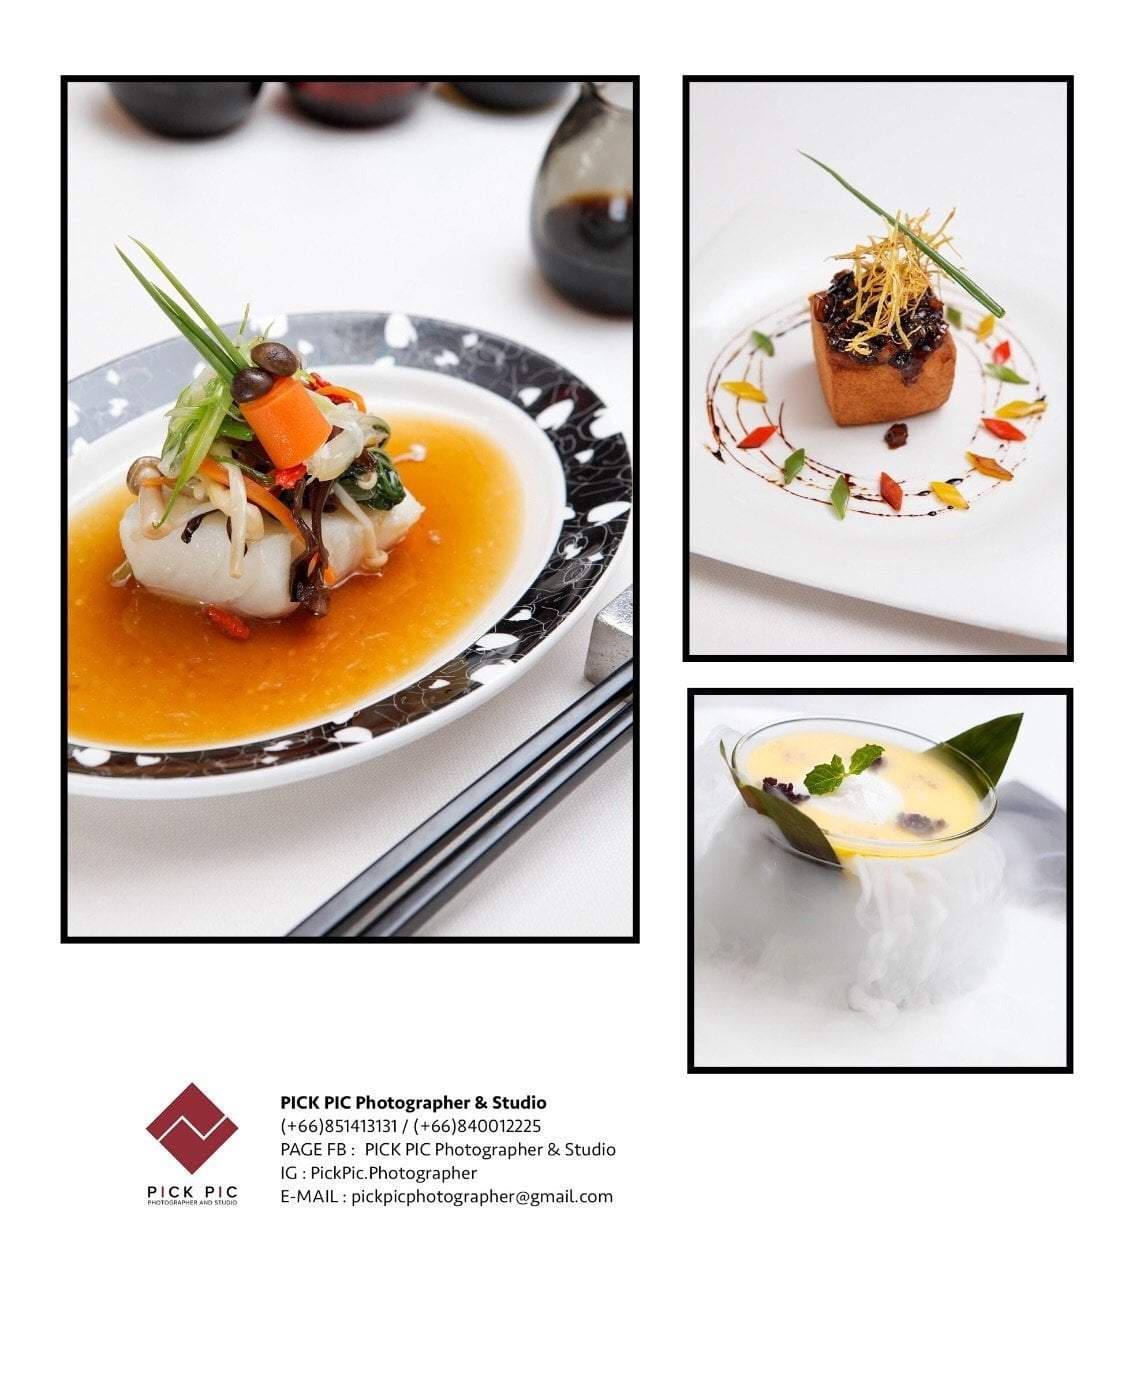 ถ่ายภาพอาหาร (Food & Menu) food stylist จันจานสวย ๆ อาหารบนจาน จัดแต่ง ฉากขาว ภาพเมนูปลา